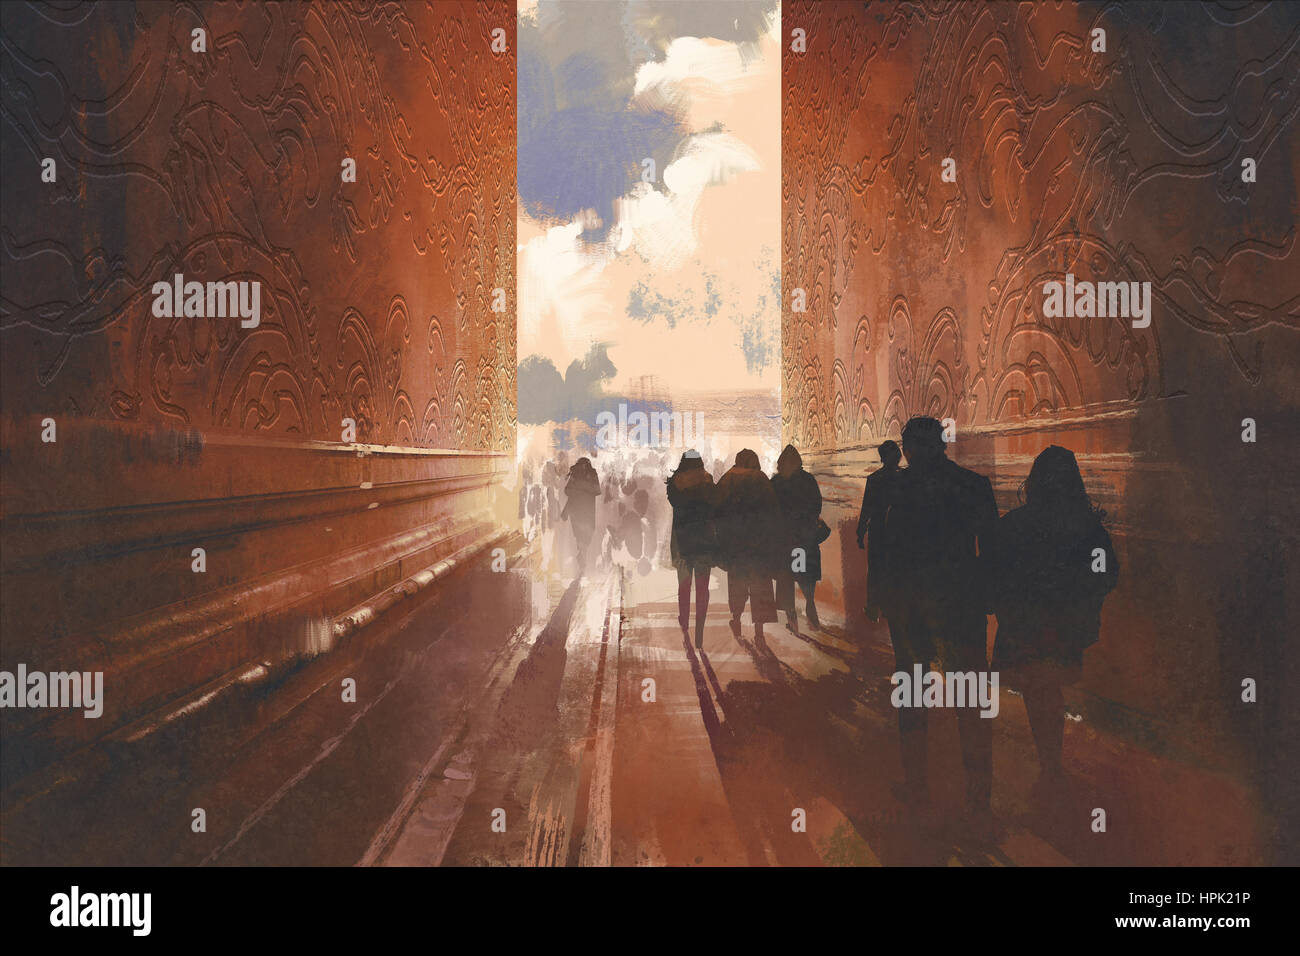 Les gens qui marchent sur la ruelle étroite avec motif graphique sur les murs,concept de moyen de bel endroit,illustration peinture Banque D'Images